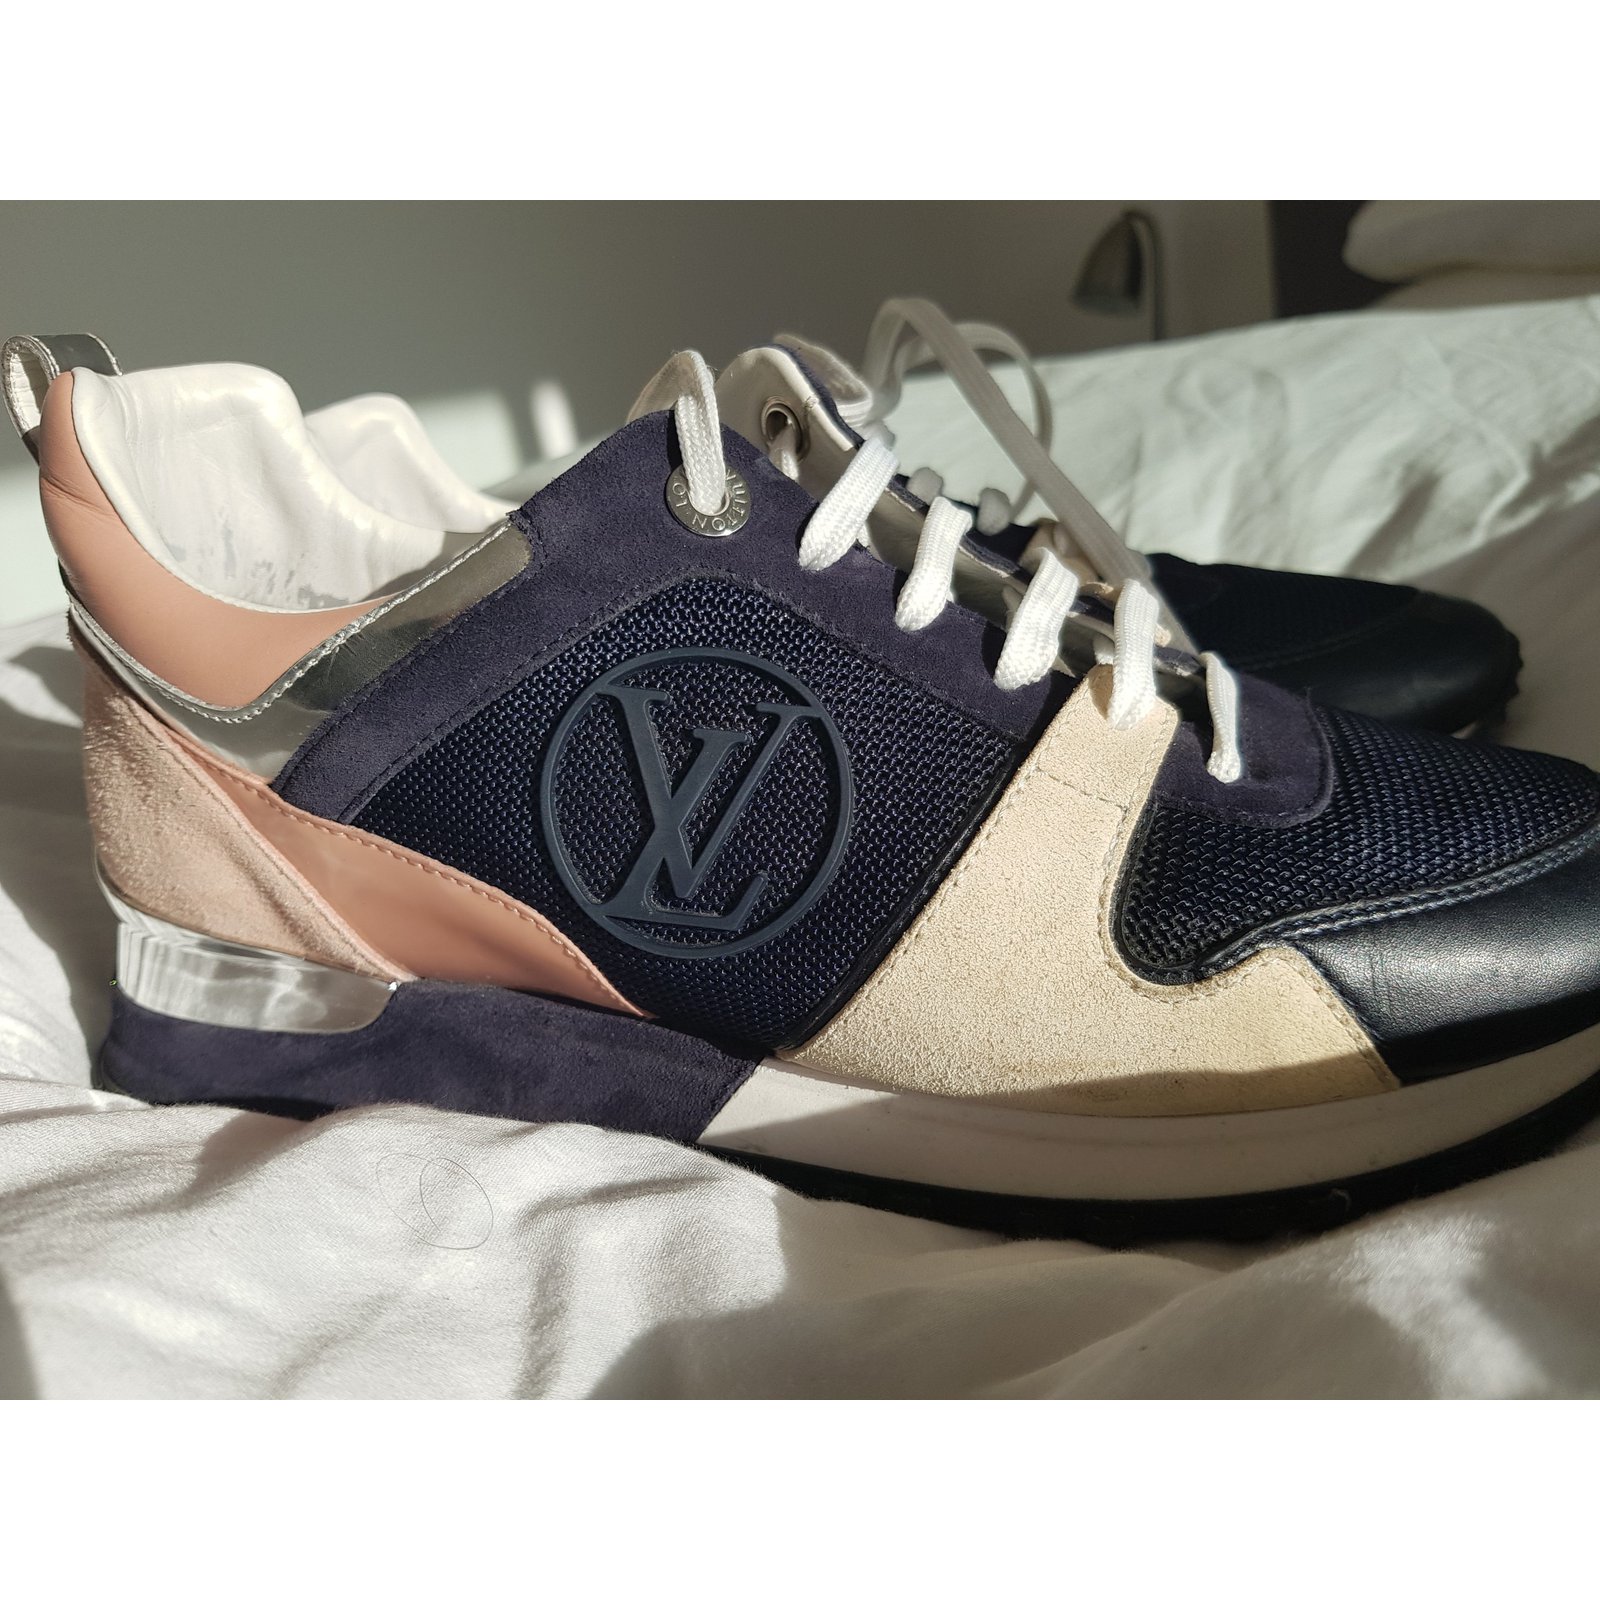 Baskets Louis Vuitton pour femme  Achat / Vente de Chaussures de Luxe ! -  Vestiaire Collective